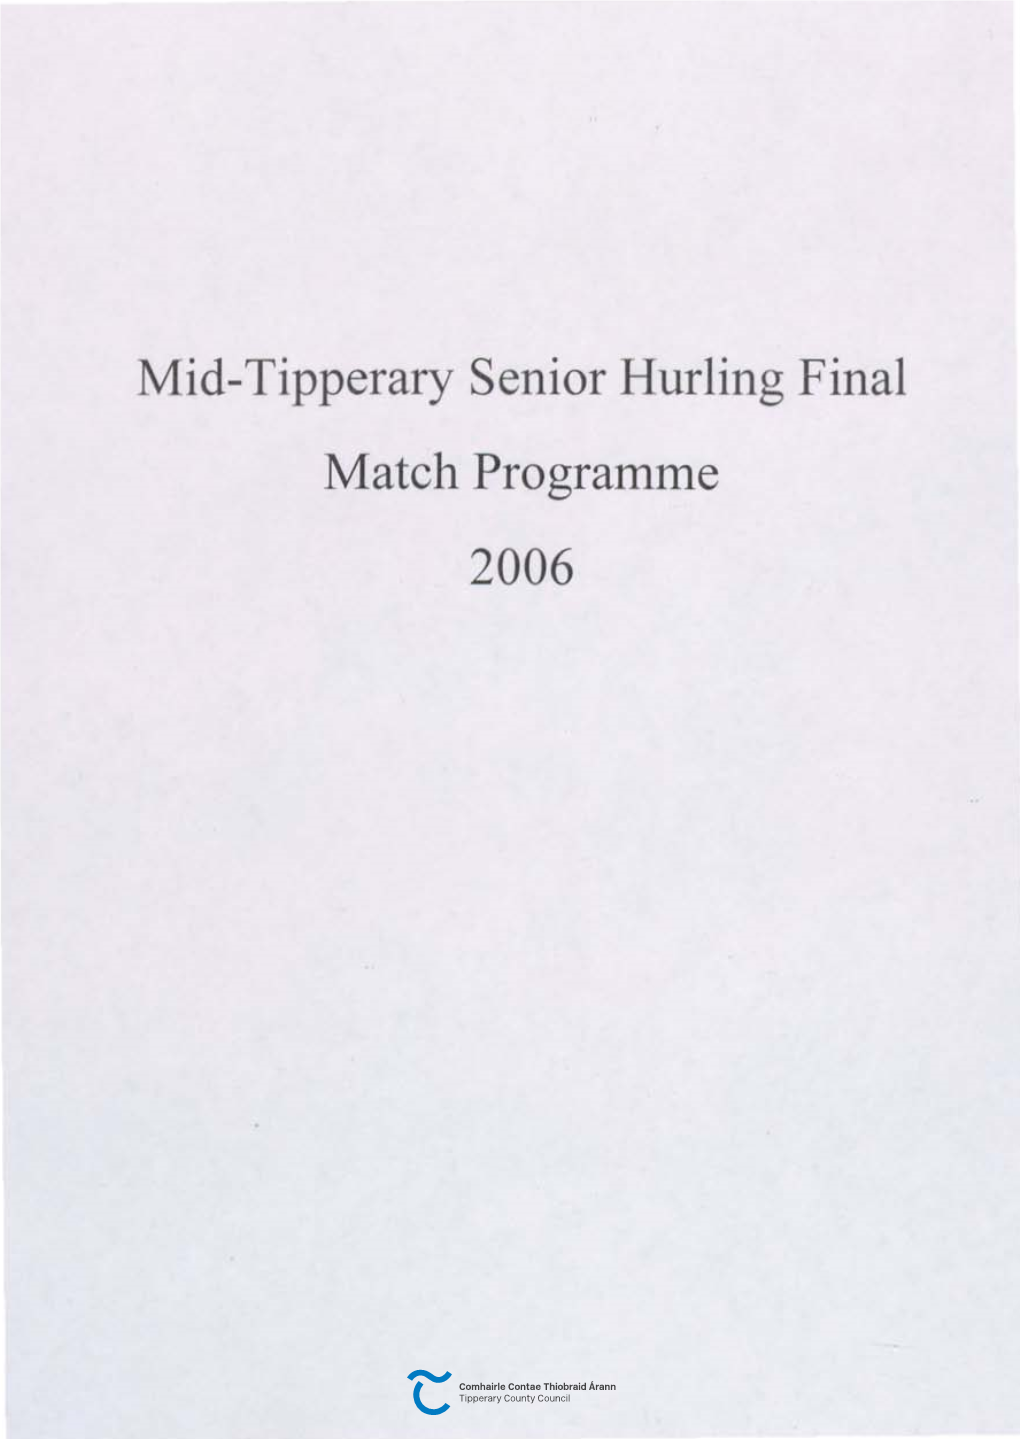 Mid-Tipperary Senior Hurling Final Match Programme 2006 M.C;Loc:Hl.Lnn (Rqad Markings) Ltd